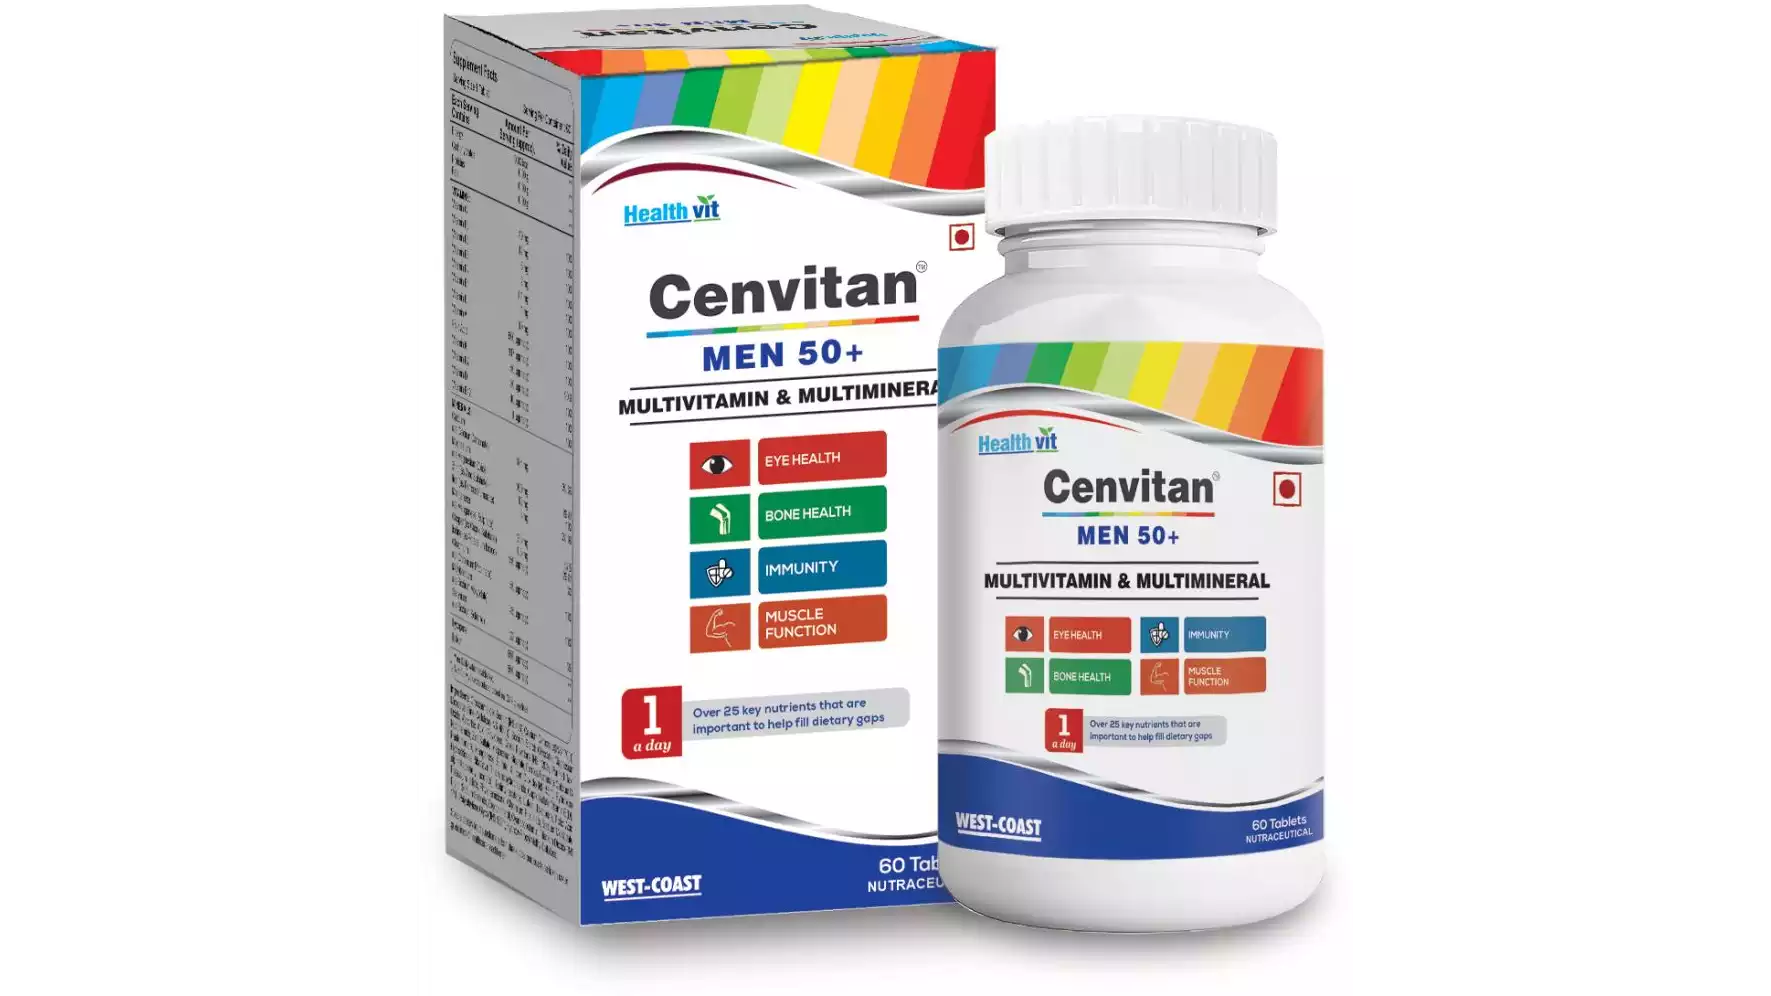 Healthvit Cenvitan Men 50+ Multivitamins And Multimineral 25 Nutrients (60tab)